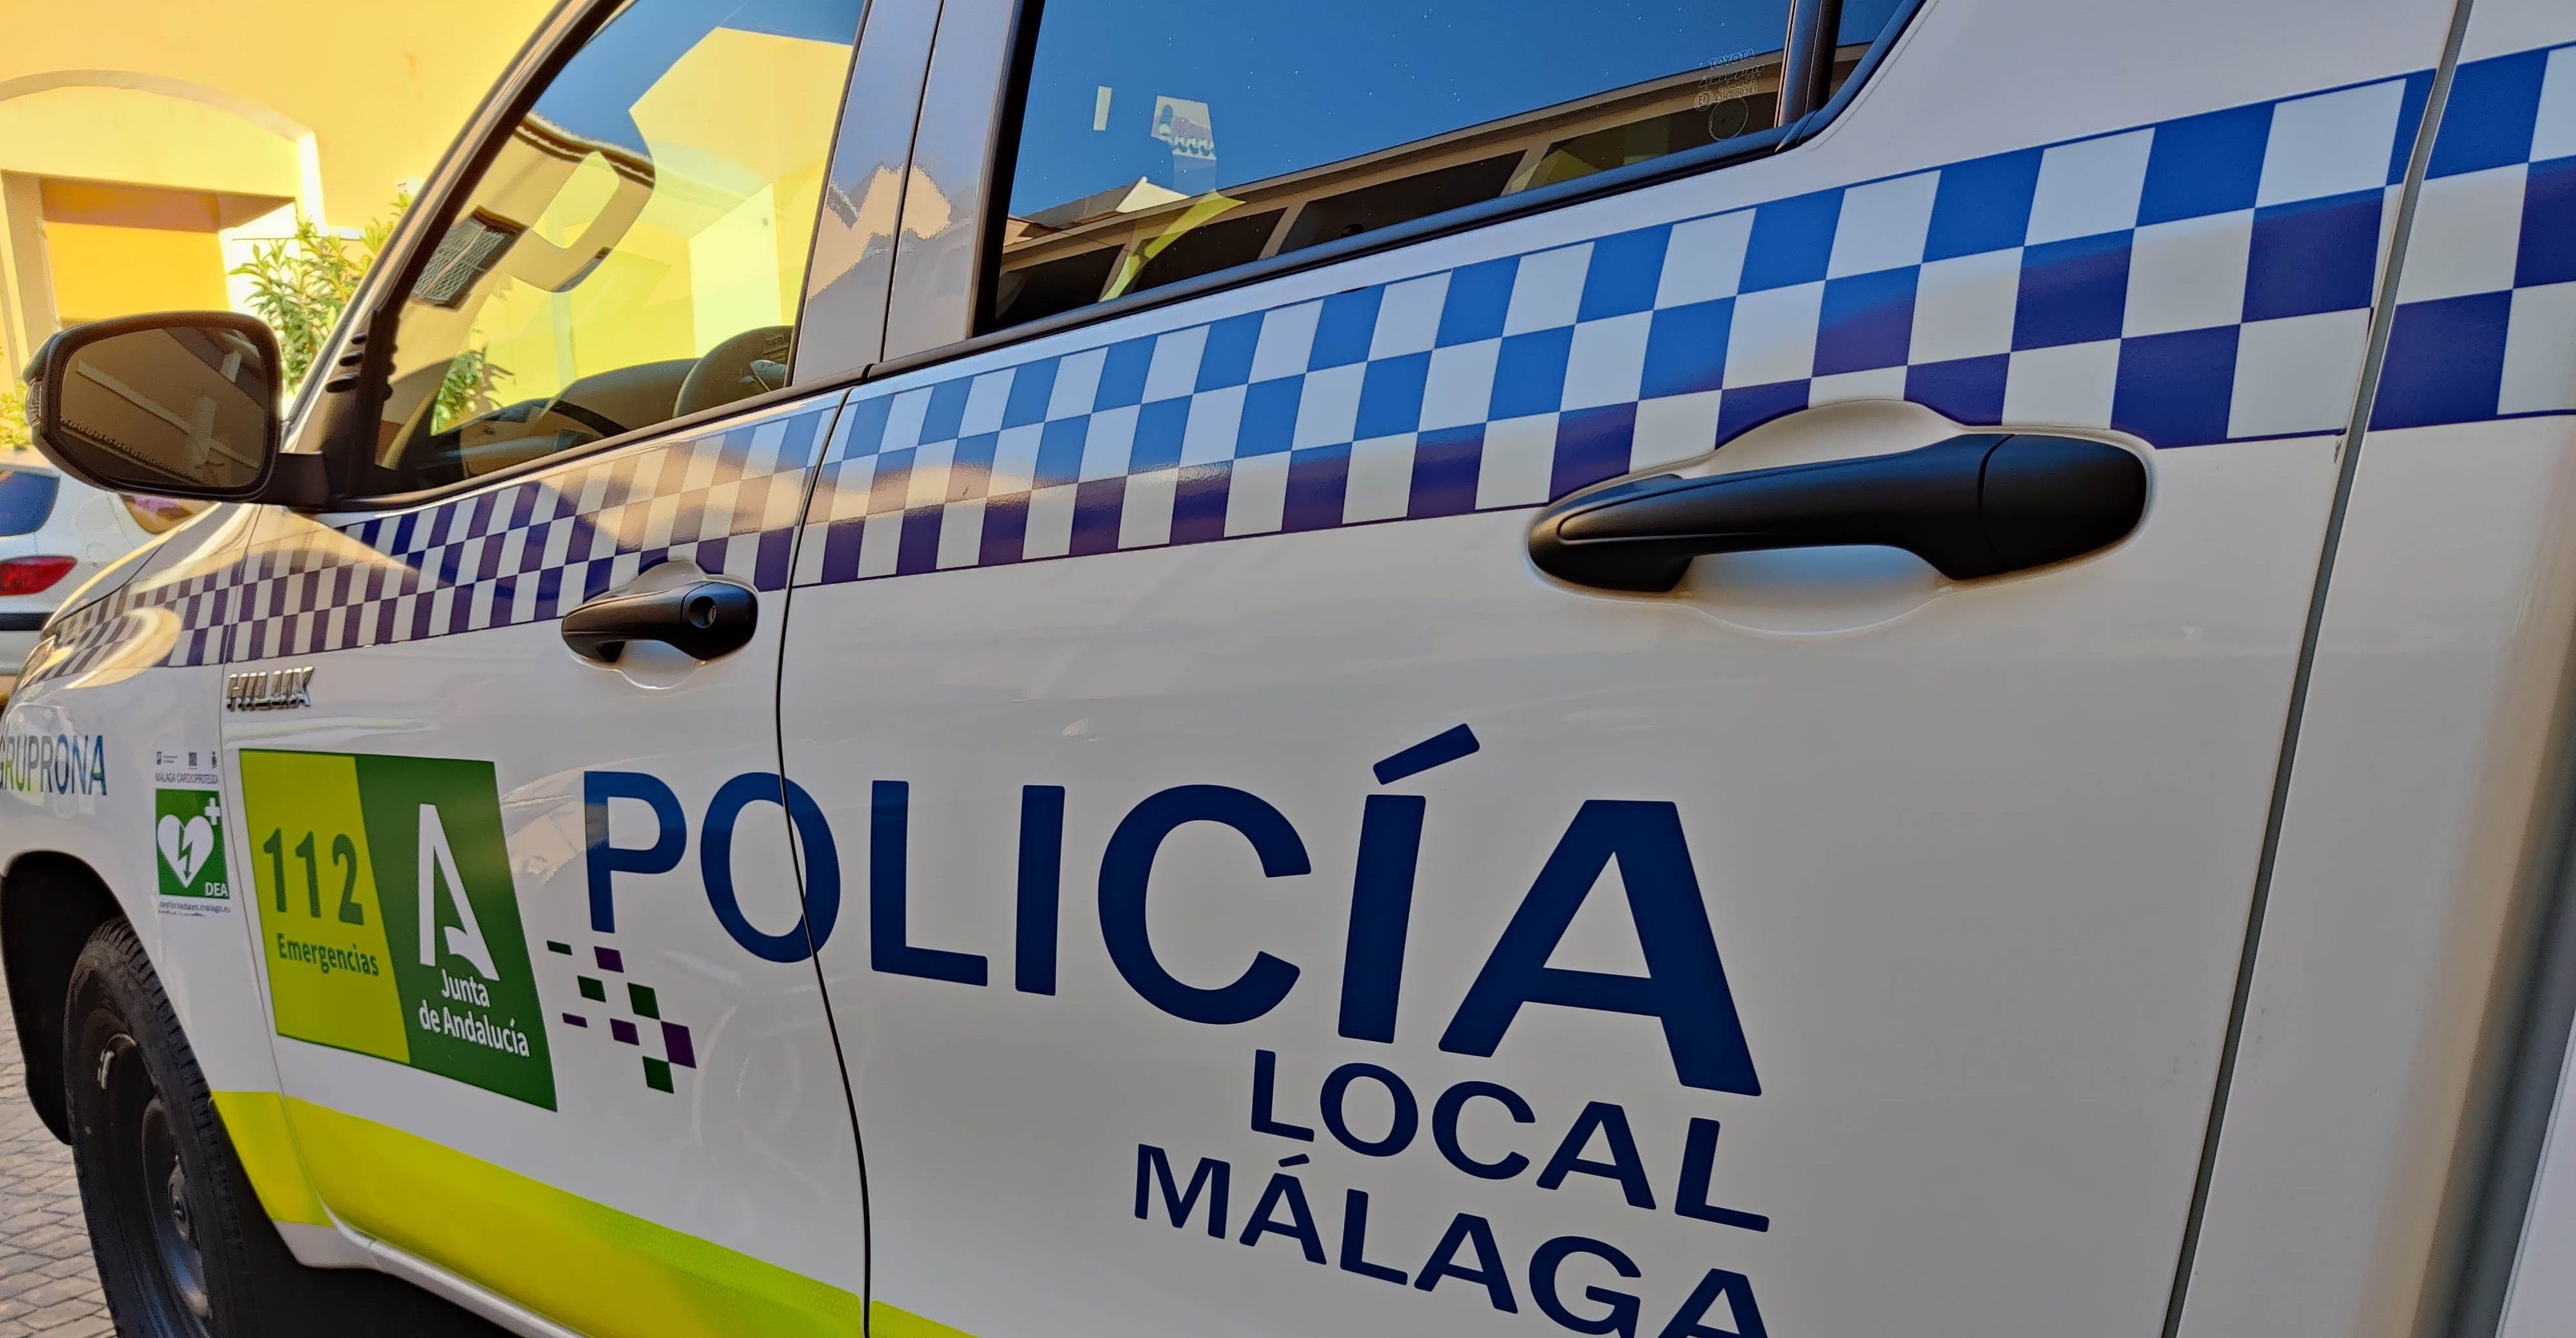 Cotxe policial / Policia Local Màlaga